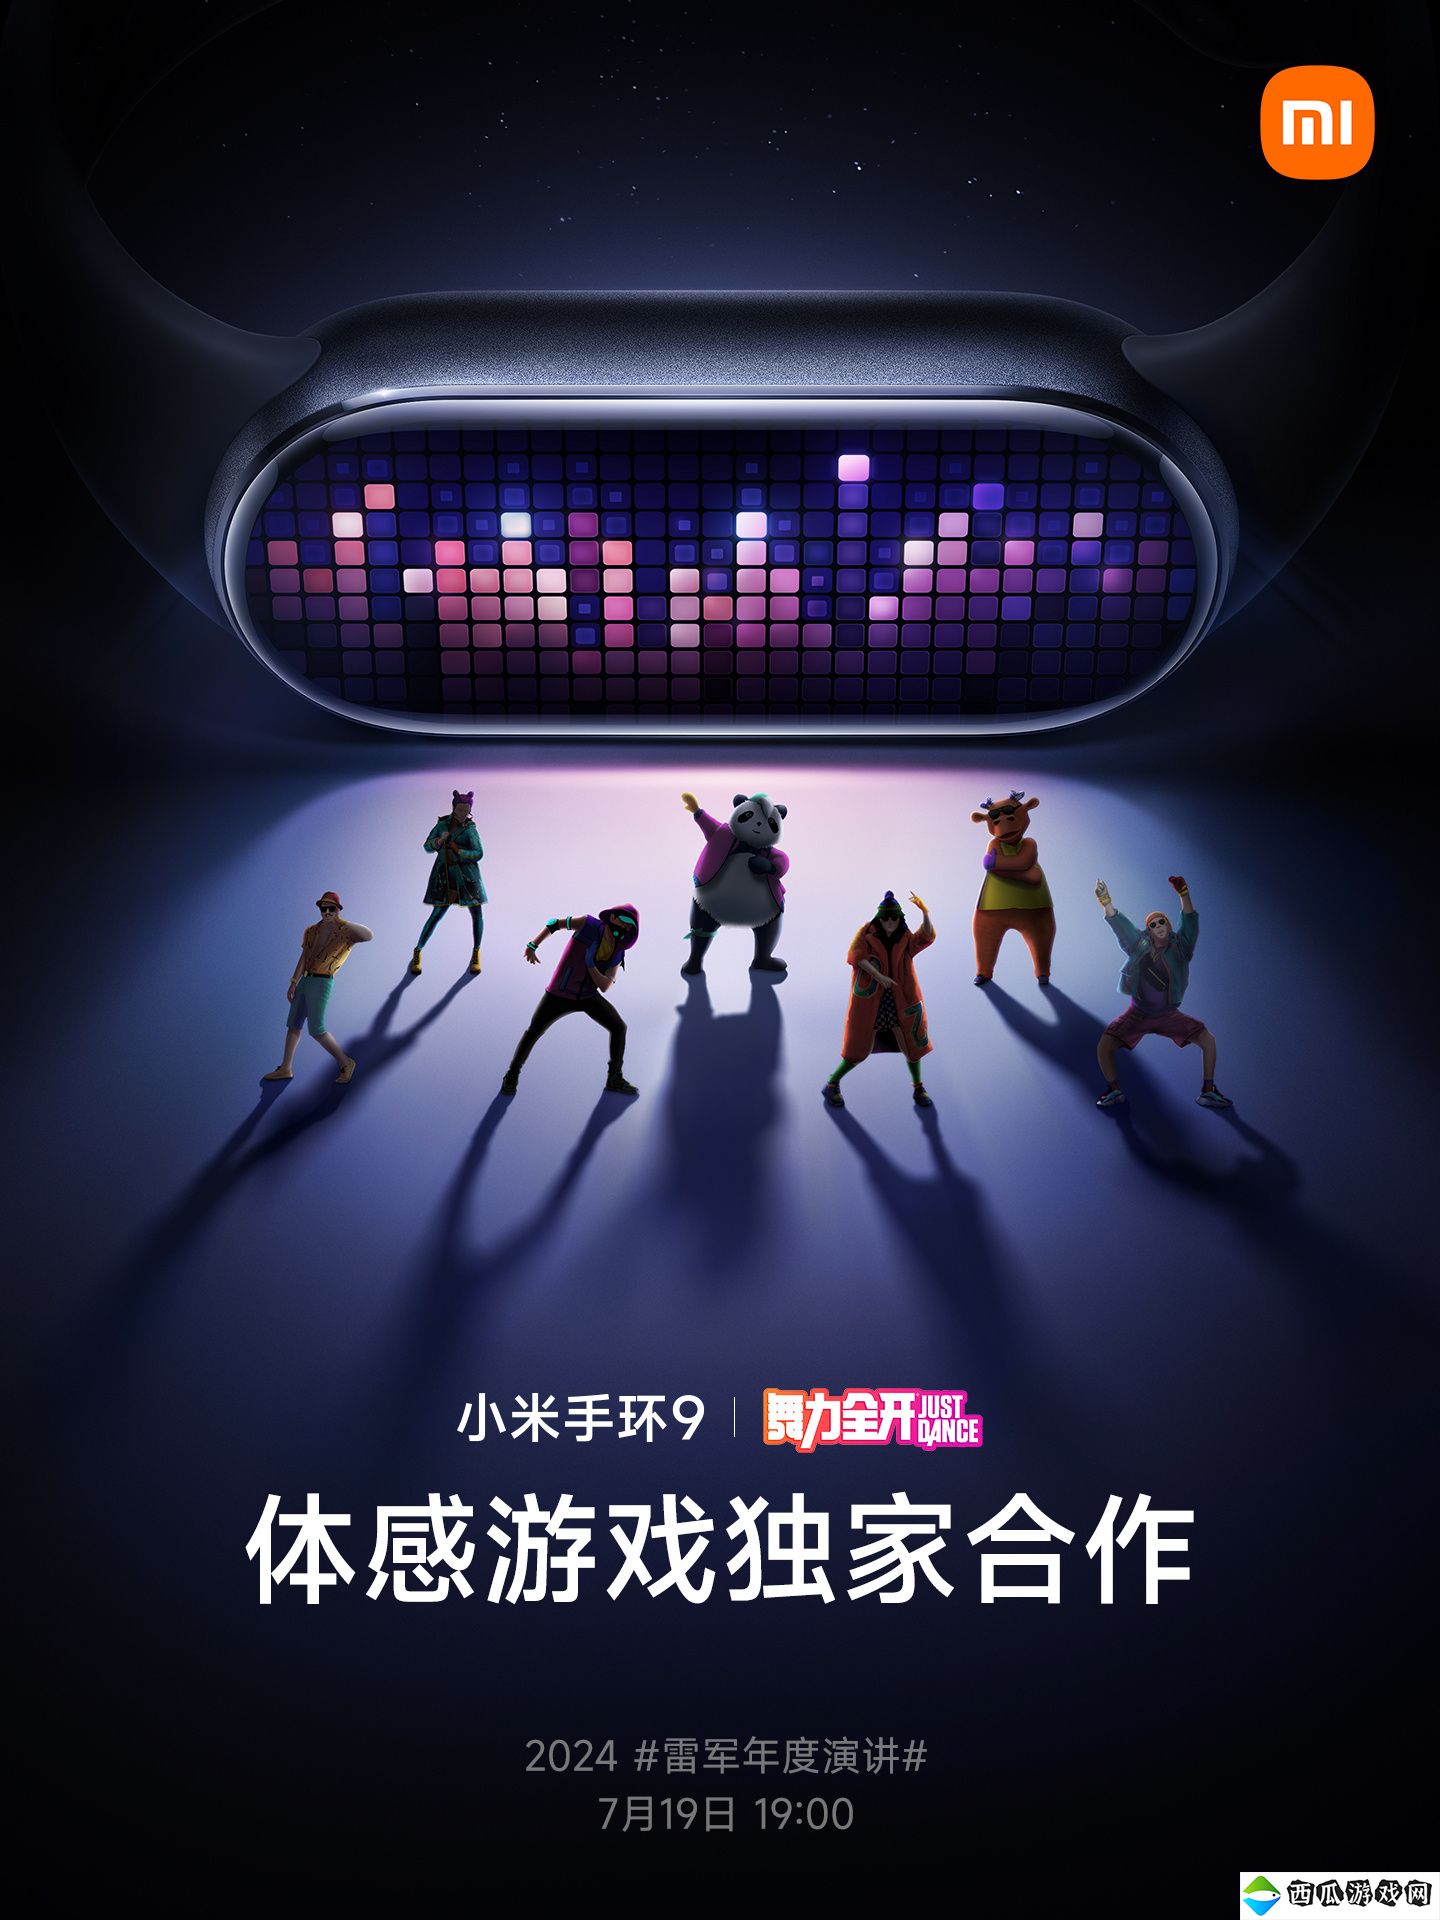 小米手环9将与Switch体感游戏《舞力全开》合作 7月19日公开